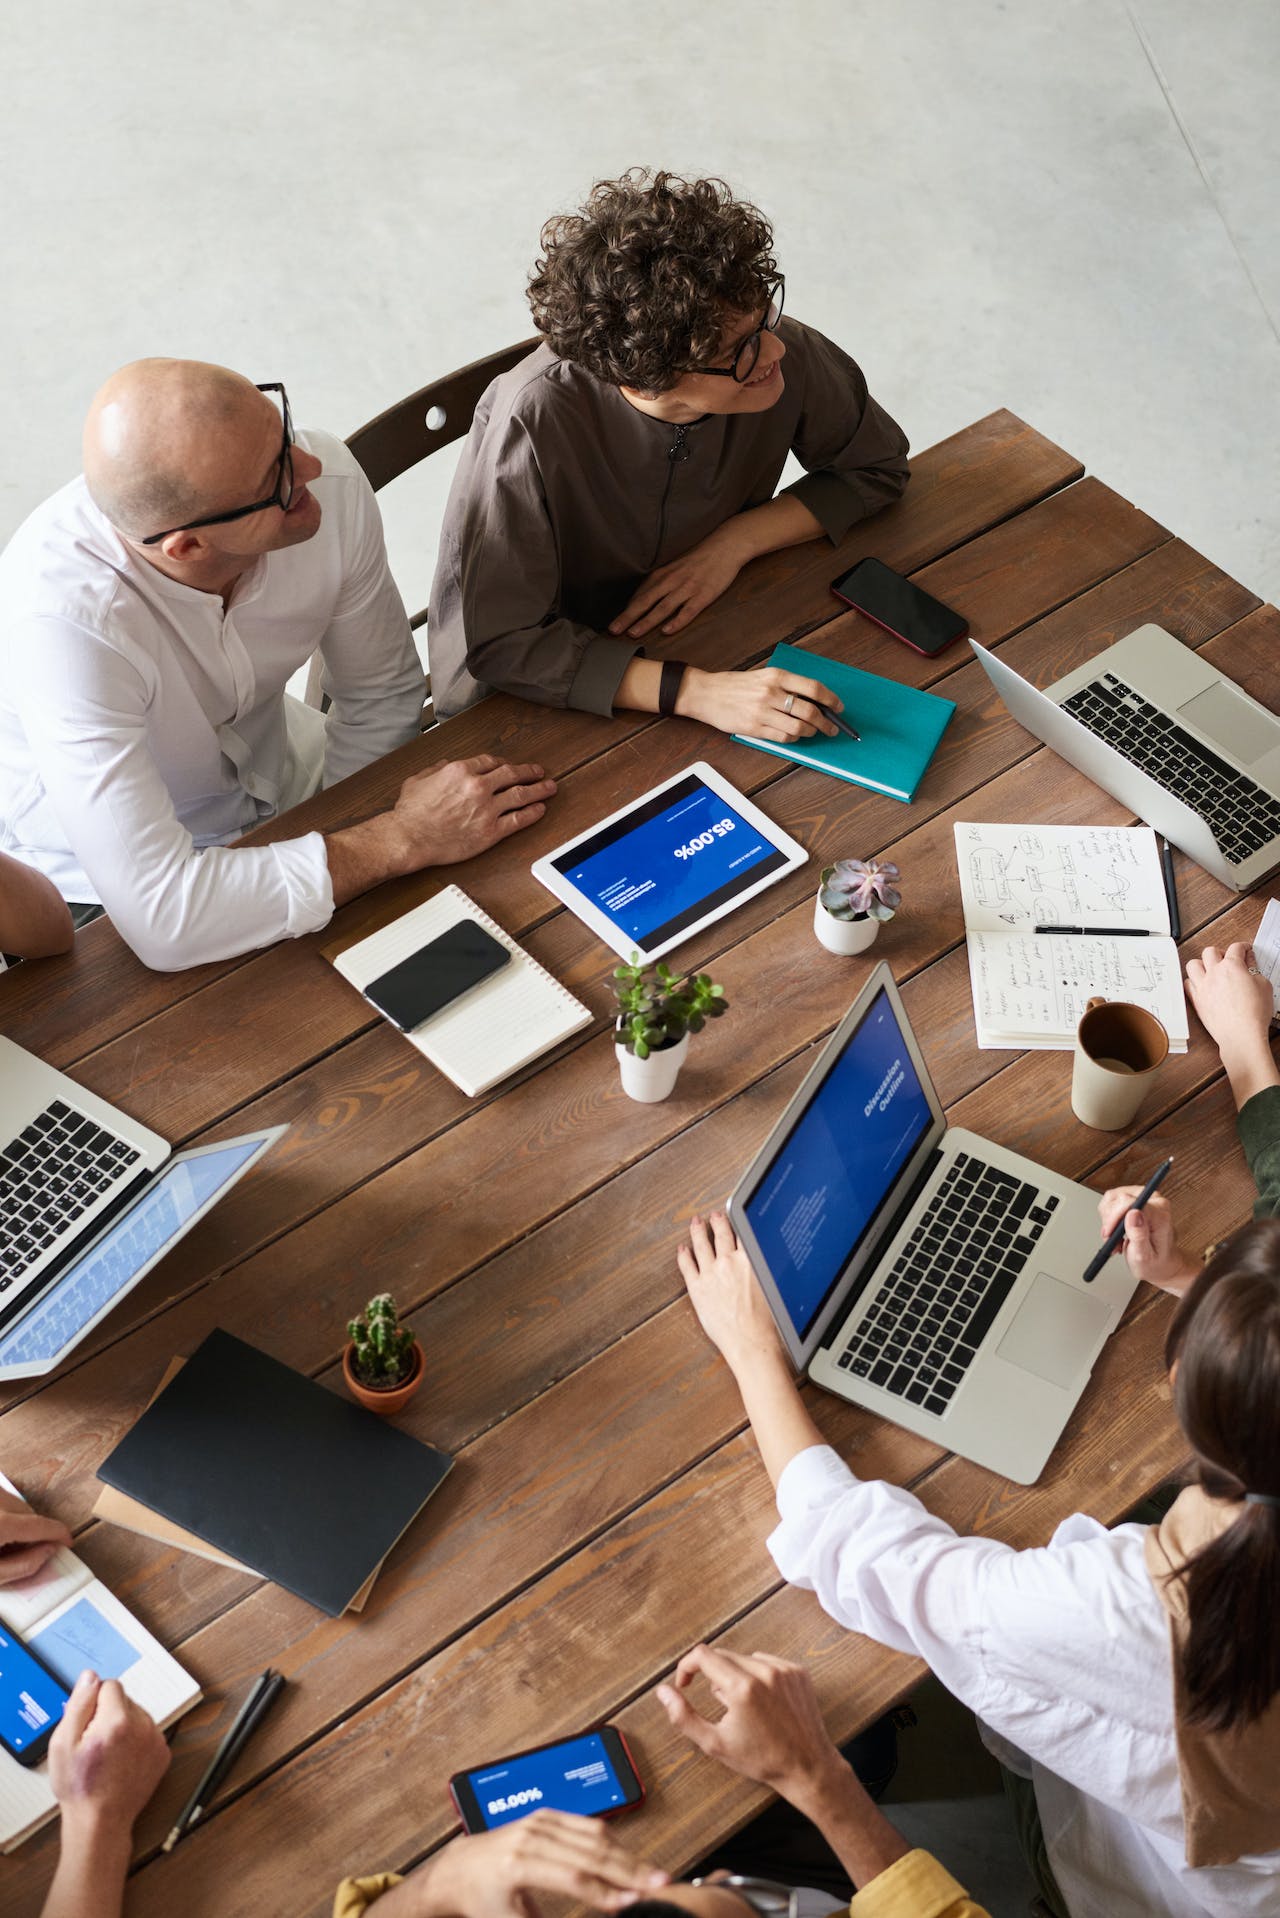 Grupa ludzi siedzących na spotkaniu biznesowym, mająca na stole laptopy i notesy